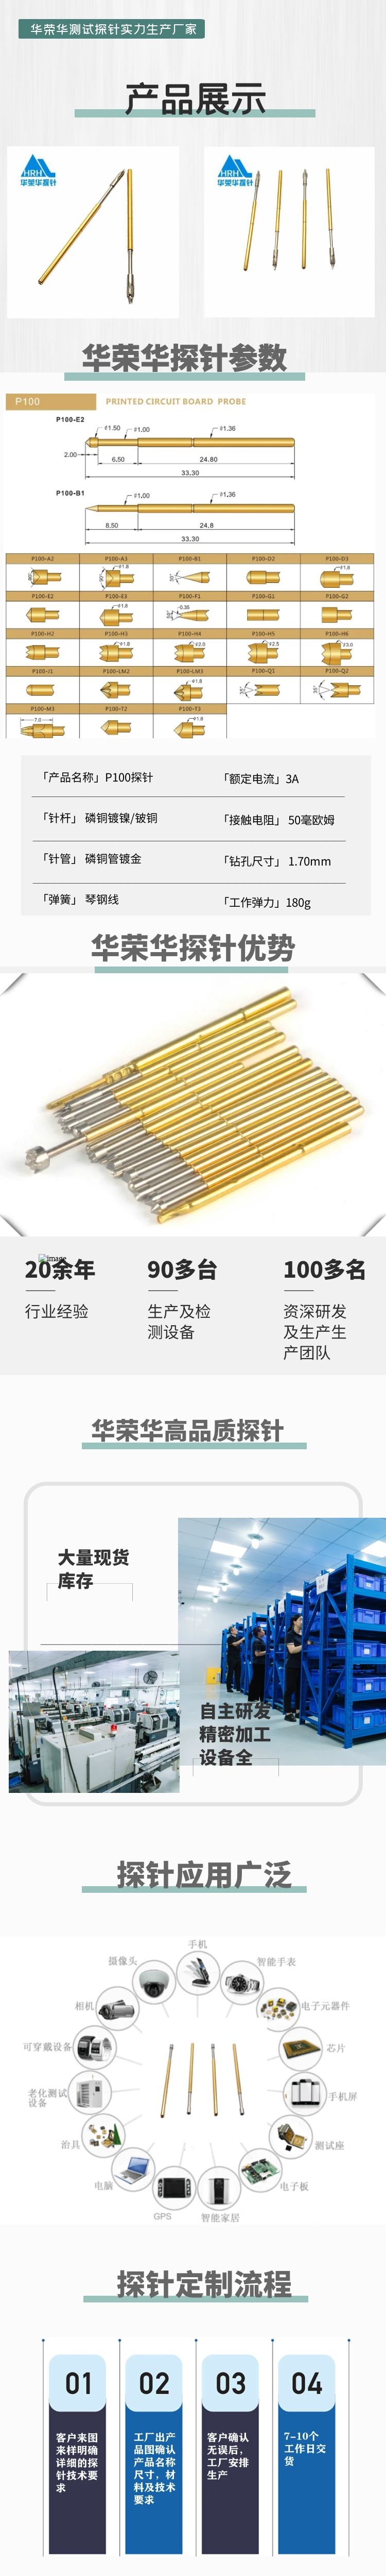 华荣华P100-M3 测试探针厂家